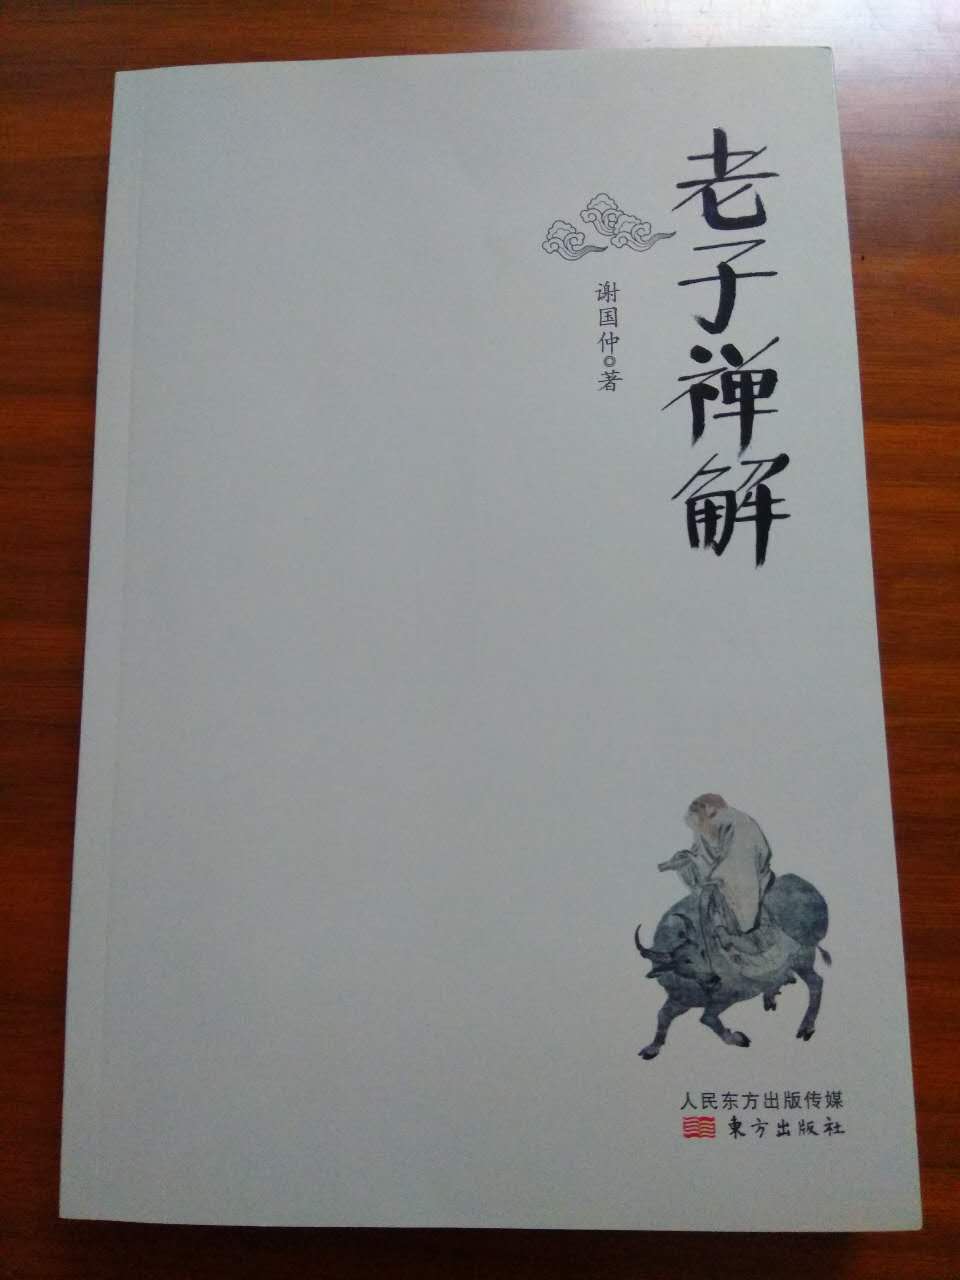 谢国仲《老子禅解》新书发布会在上海举行